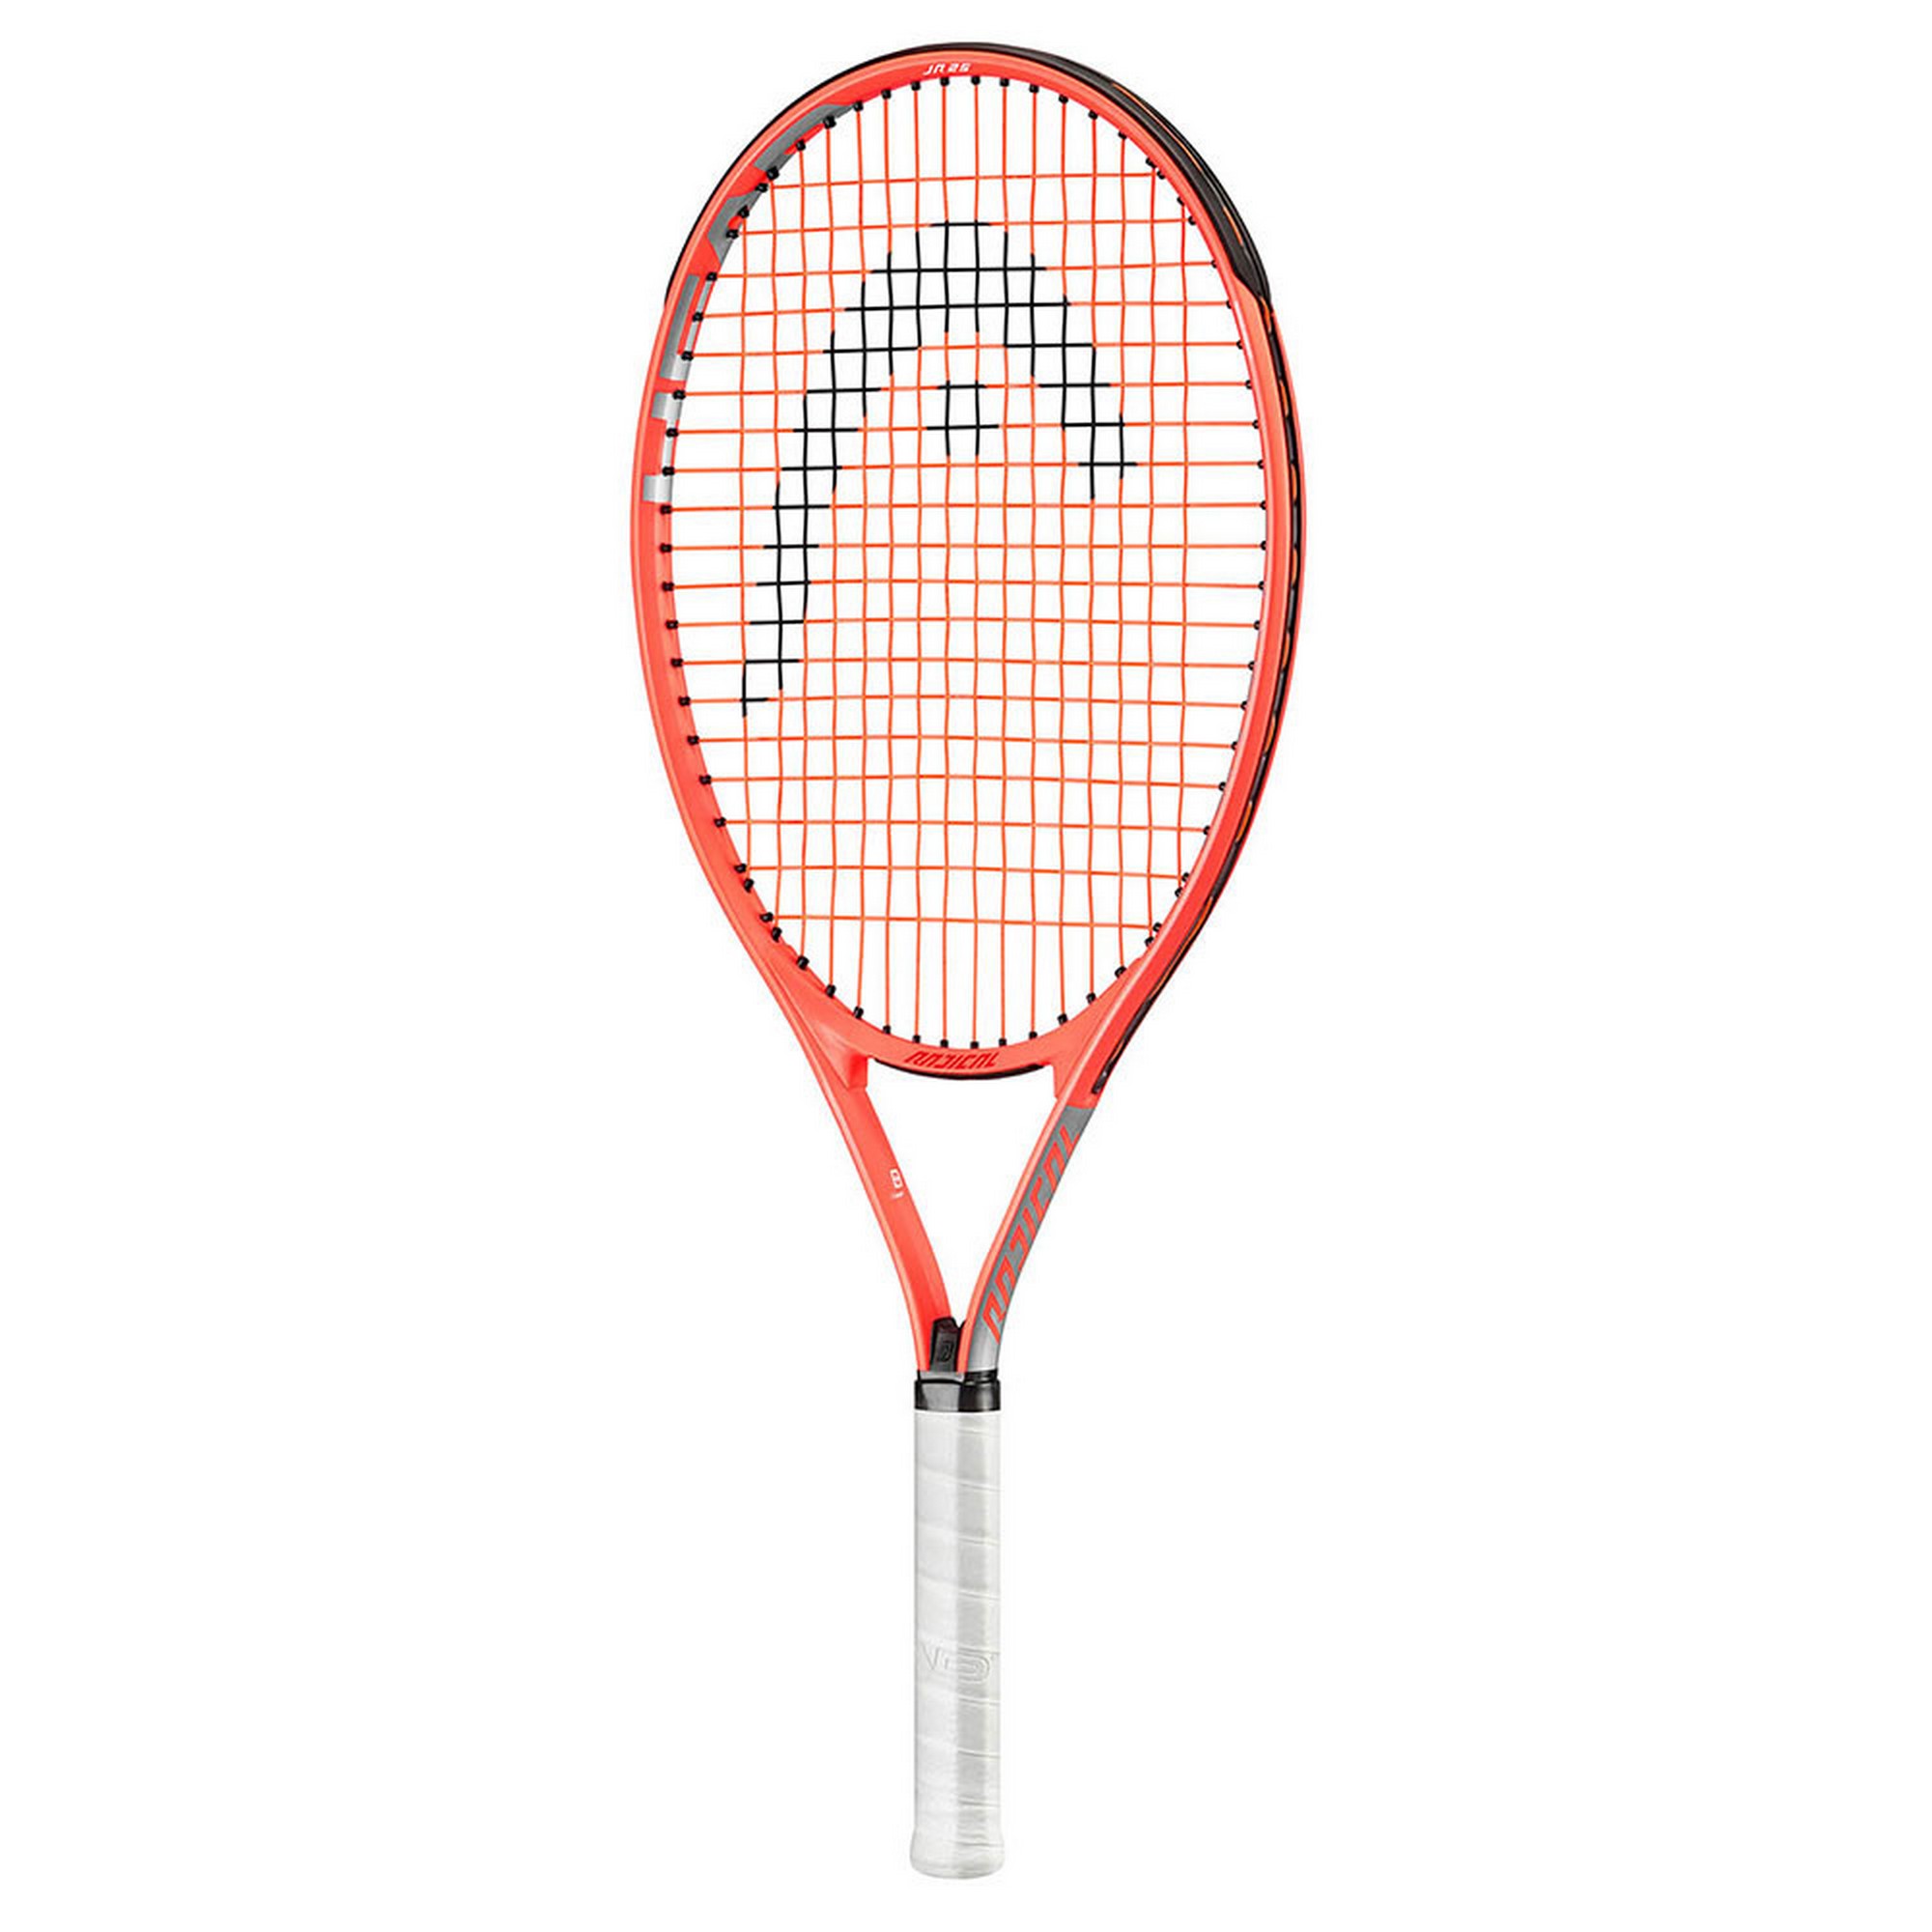 Ракетка для большого тенниса, детская Head Radical 21 Gr06 235131 оранжевый